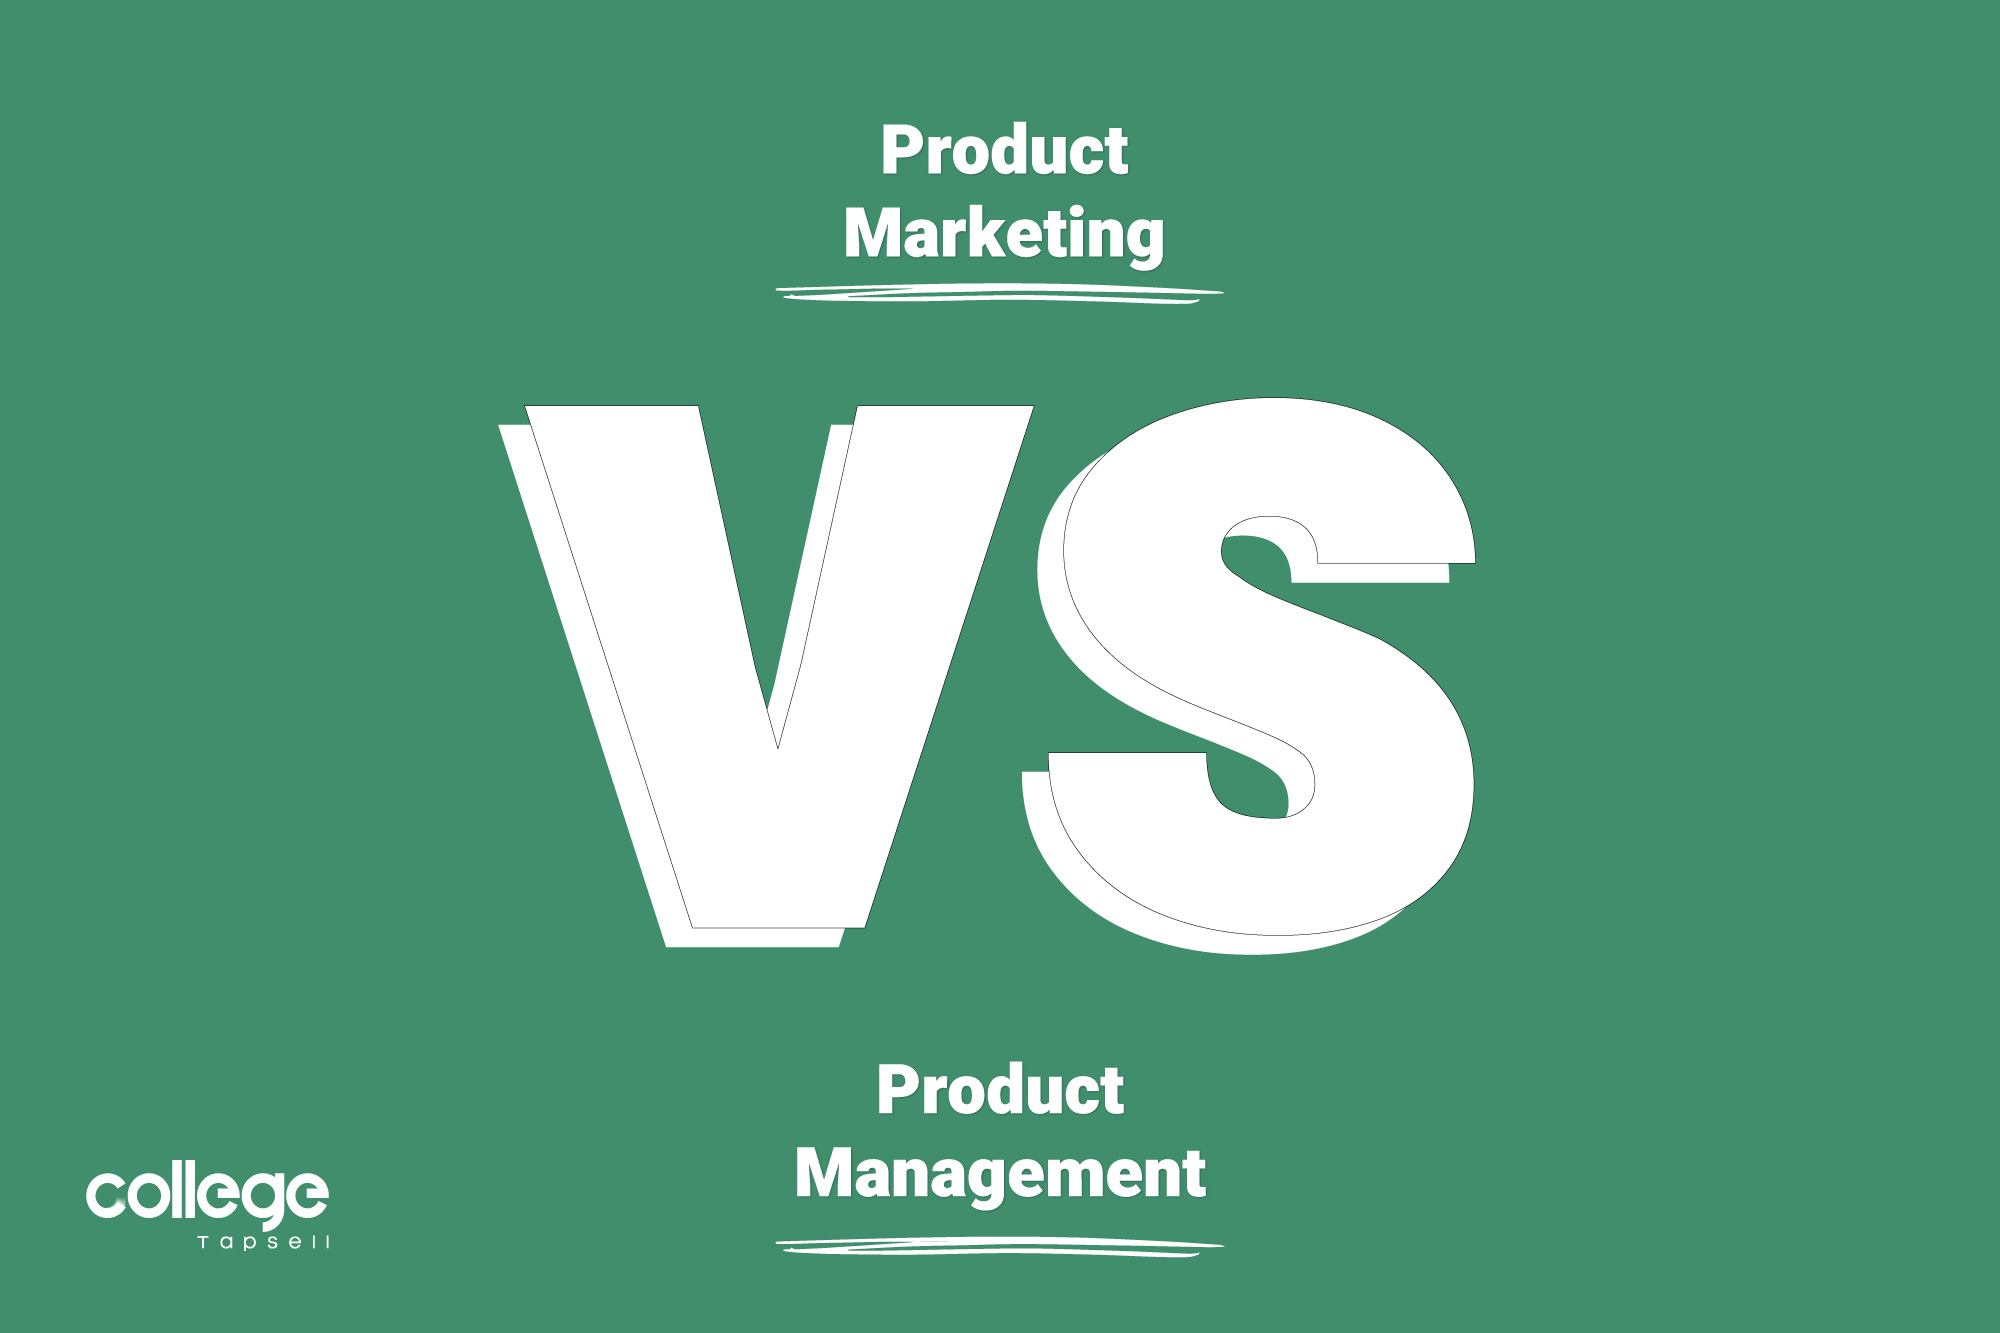 مدیریت بازاریابی محصول در برابر مدیریت محصول